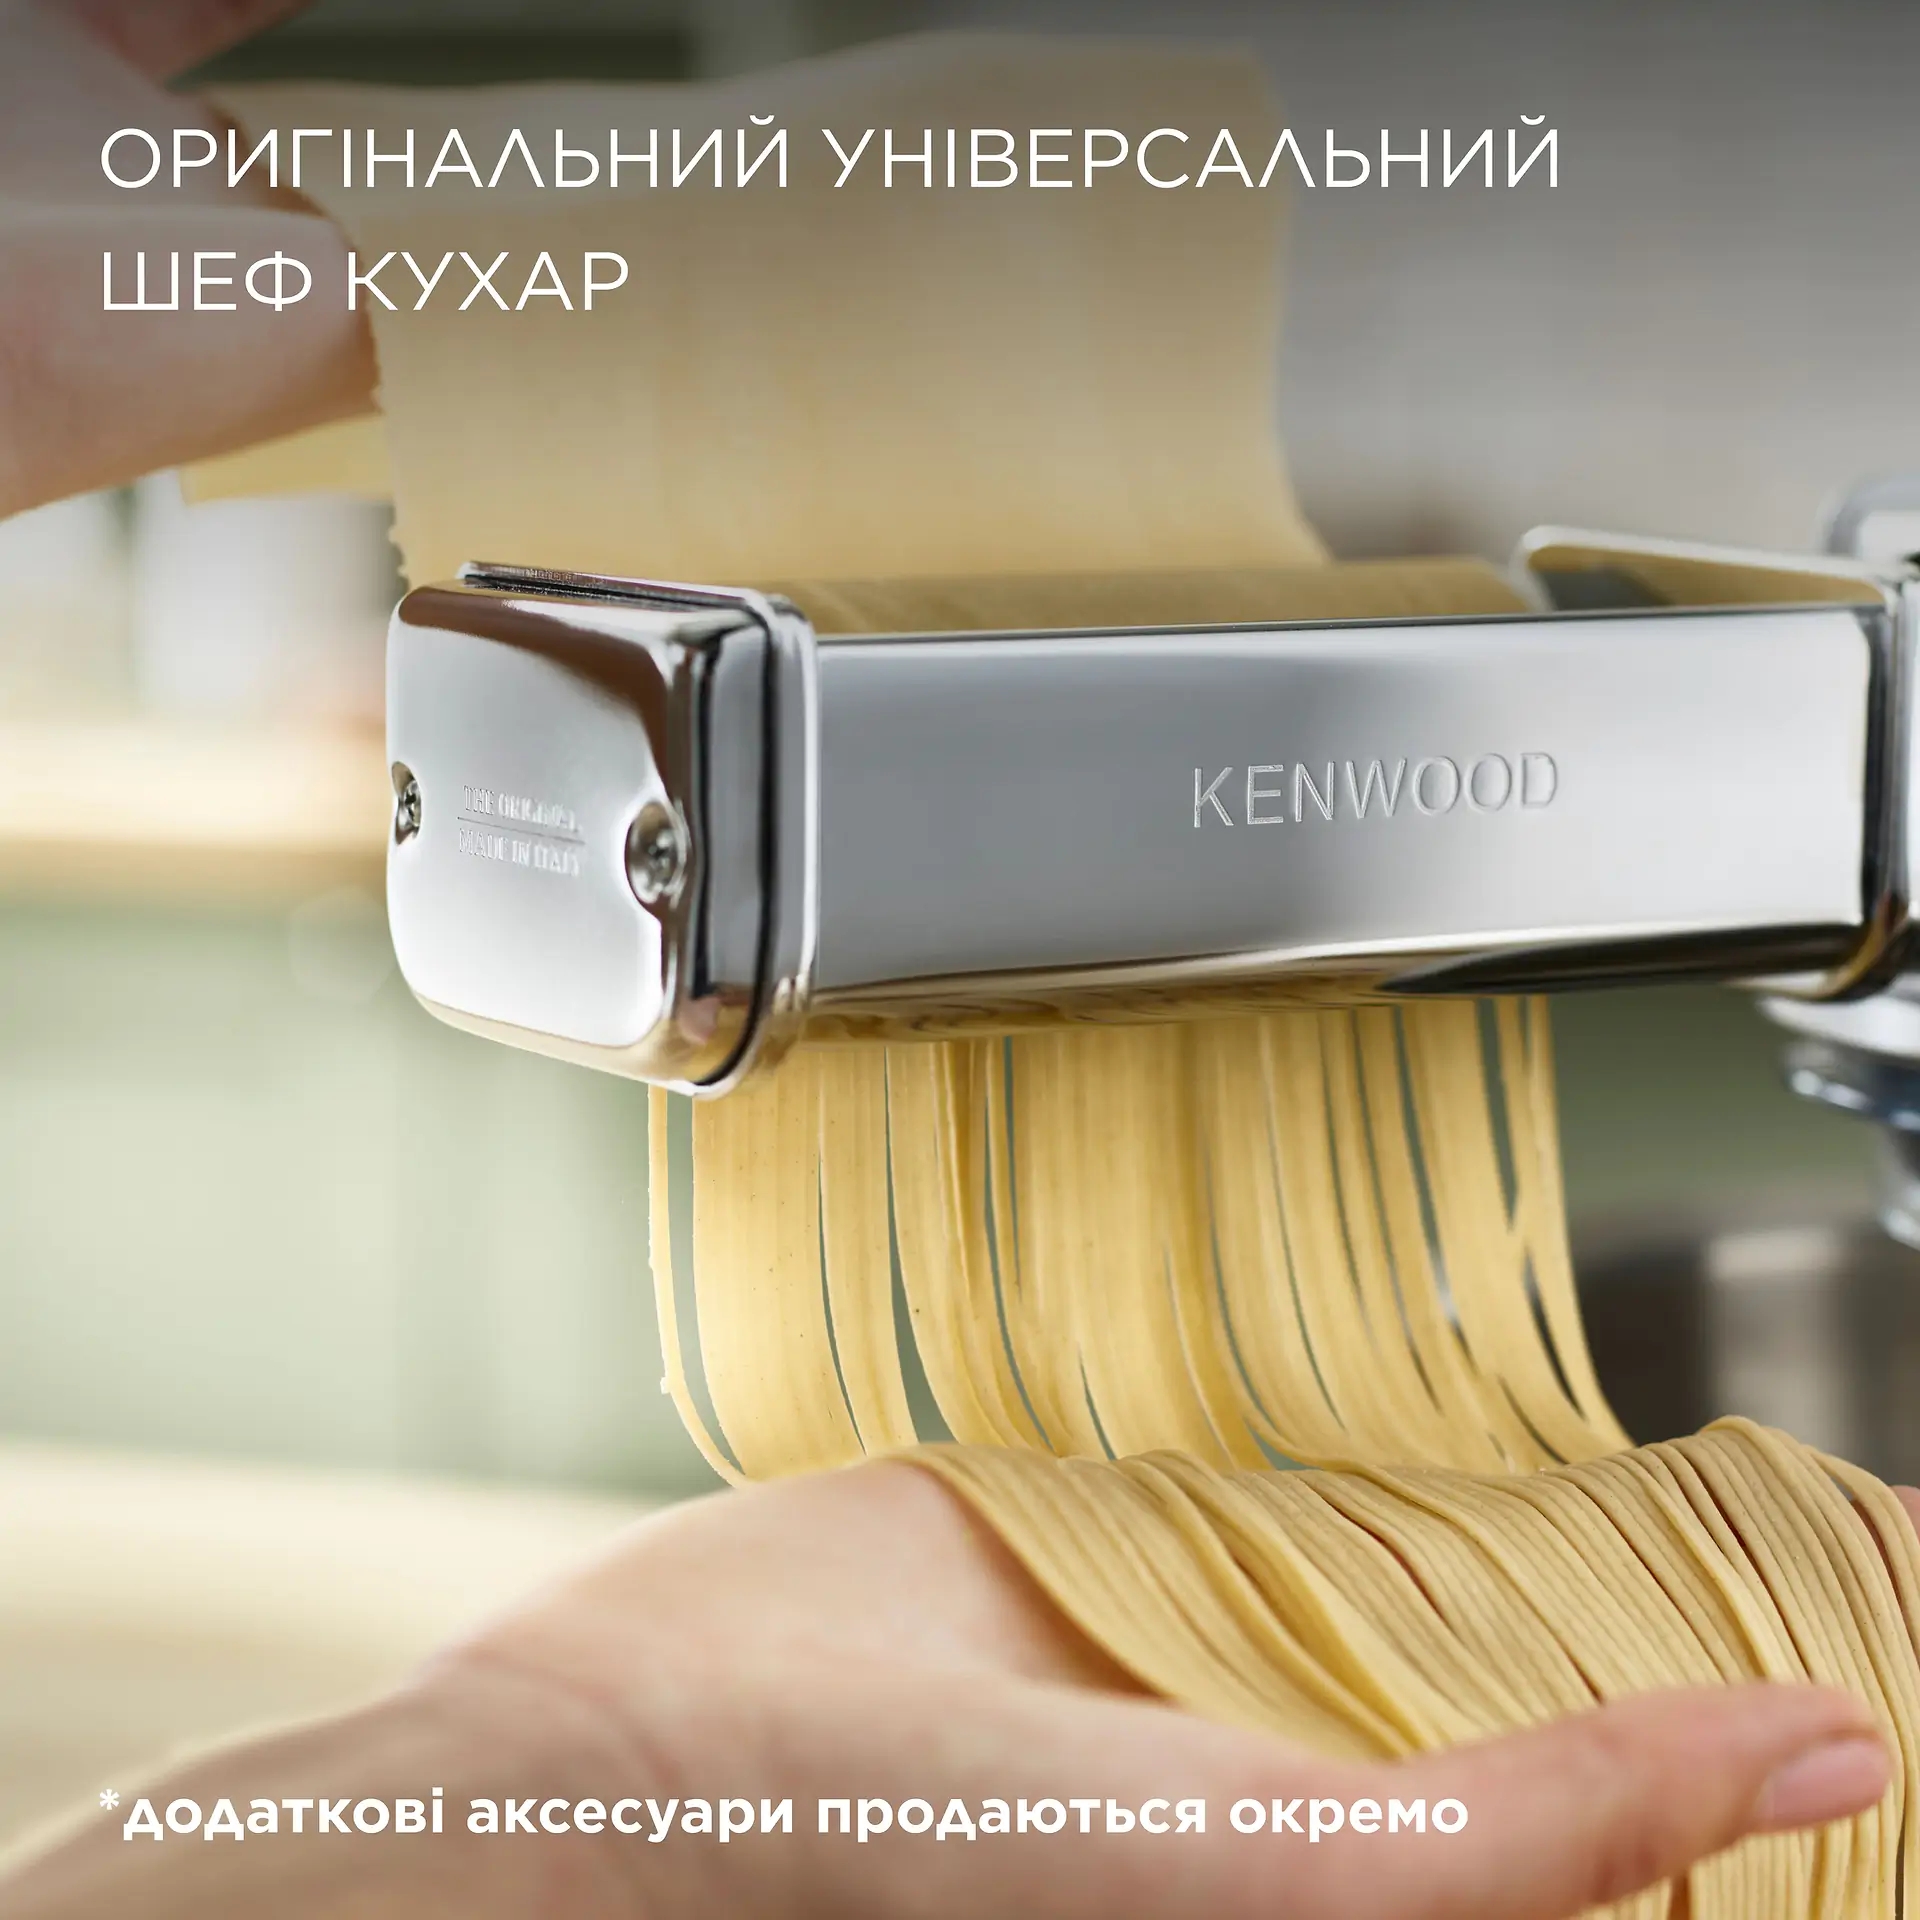 обзор товара Кухонная машина Kenwood KVC 3100 S Chef - фотография 12